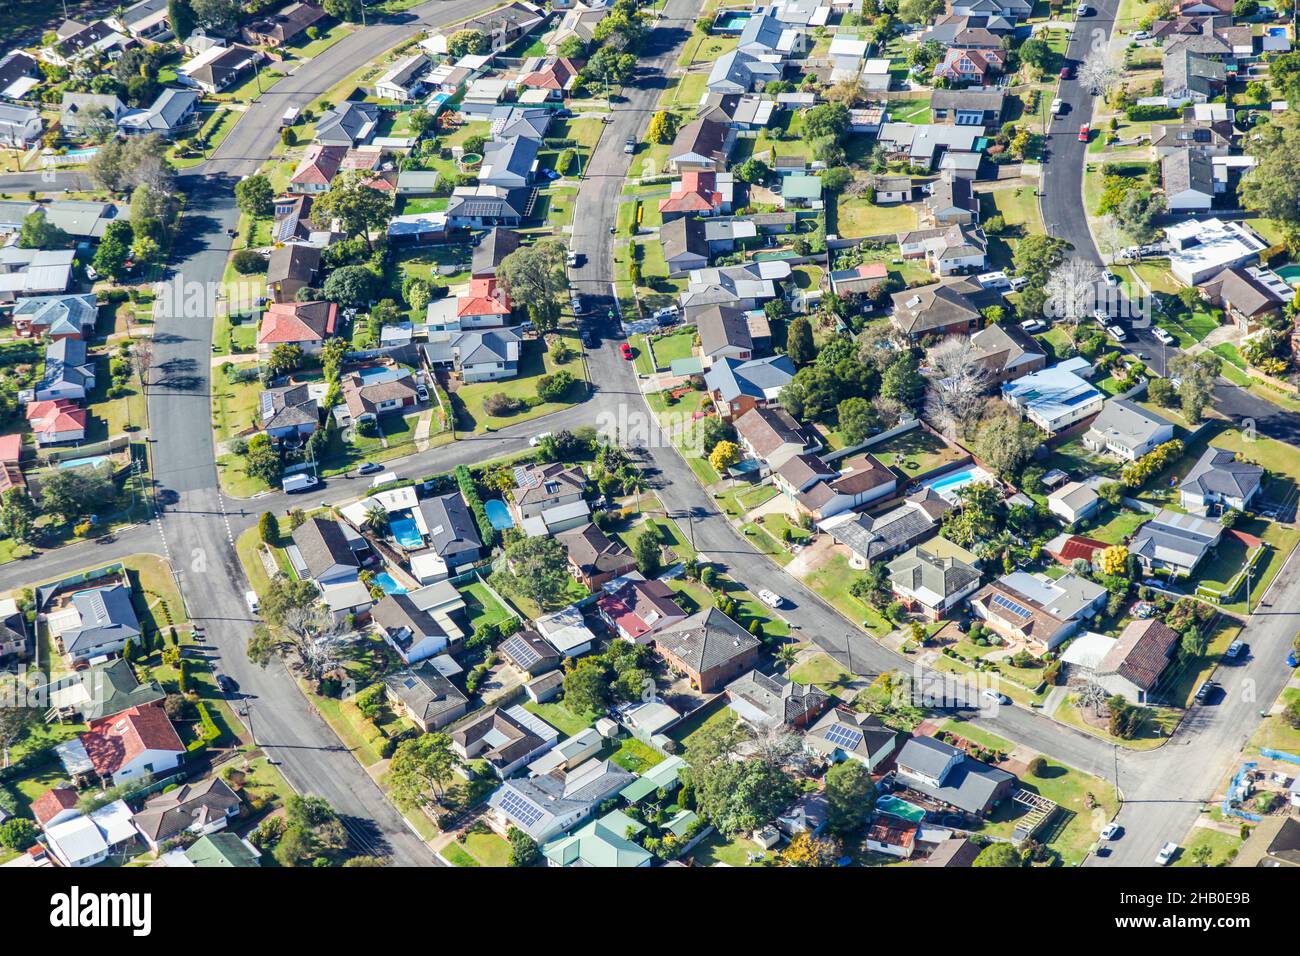 Vista aerea del tipico vecchio sobborgo australiano caratterizzato principalmente da alloggi singoli staccati con spazio sul retro. Foto Stock